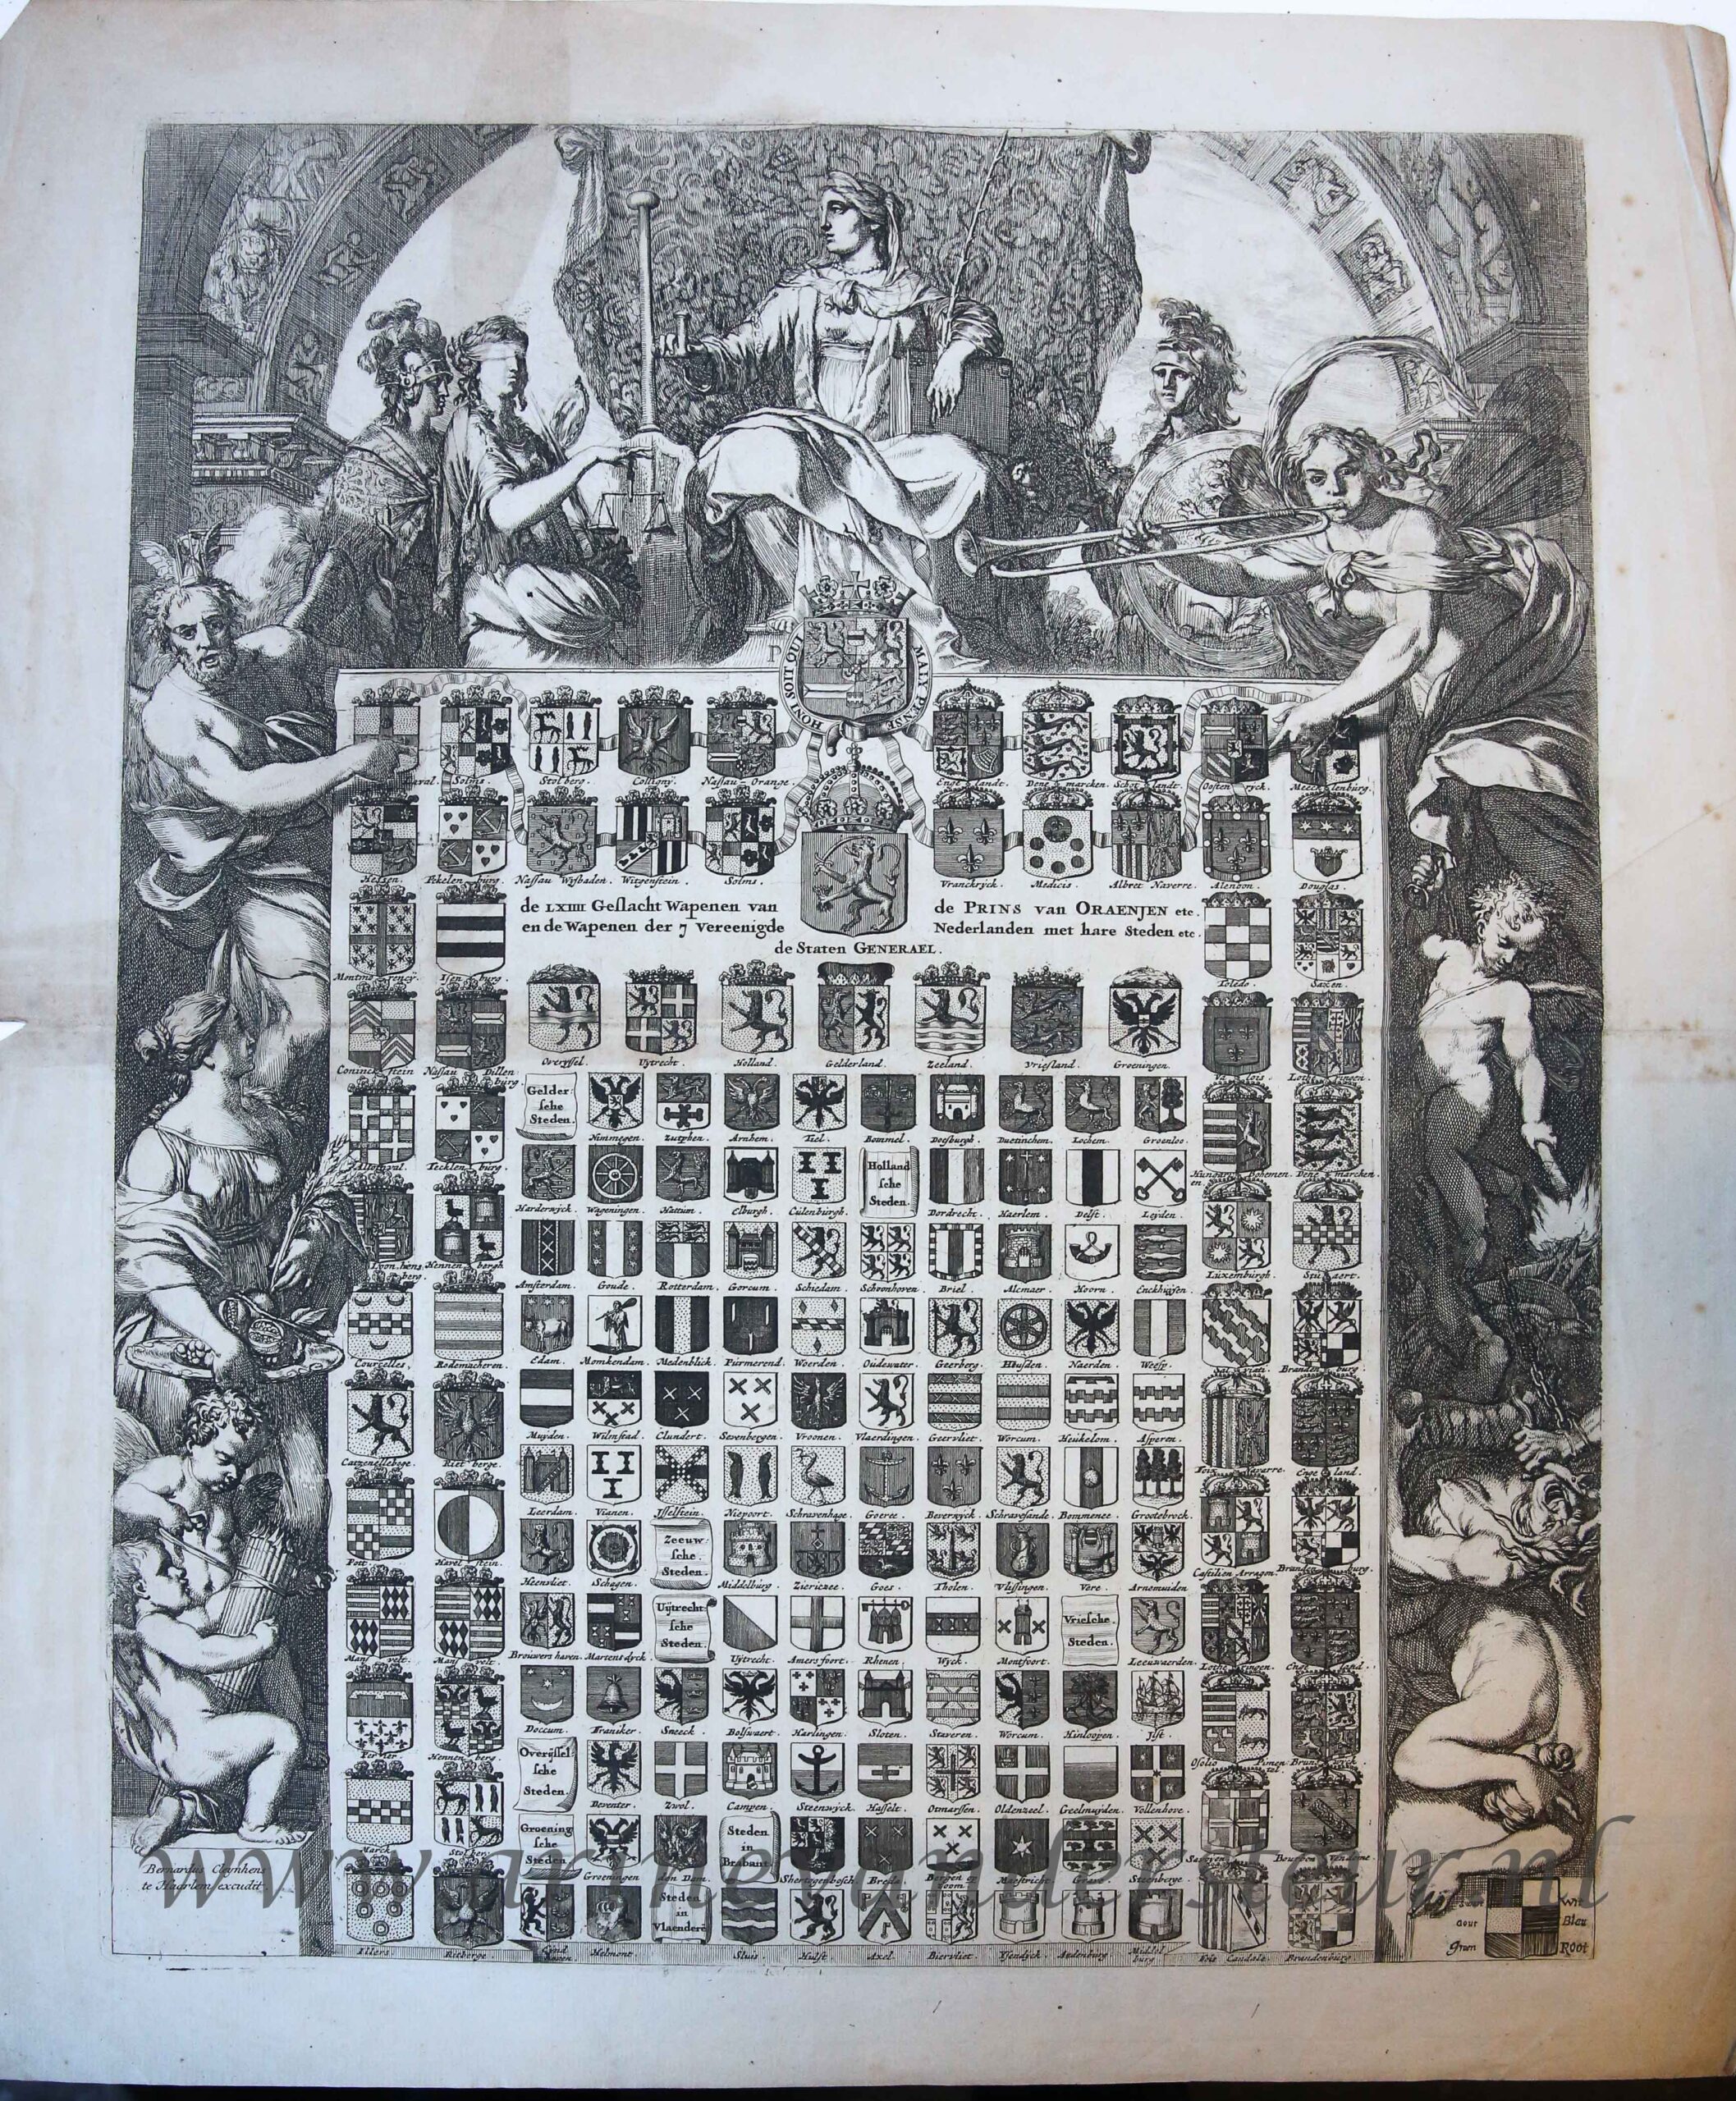 [Antique print, etching] De LXIIII Geslacht Wapenen van de Prins van Oraenjen etc. en de Wapenen der 7 Vereenigde Nederlanden met hare Steden etc., published ca. 1672.